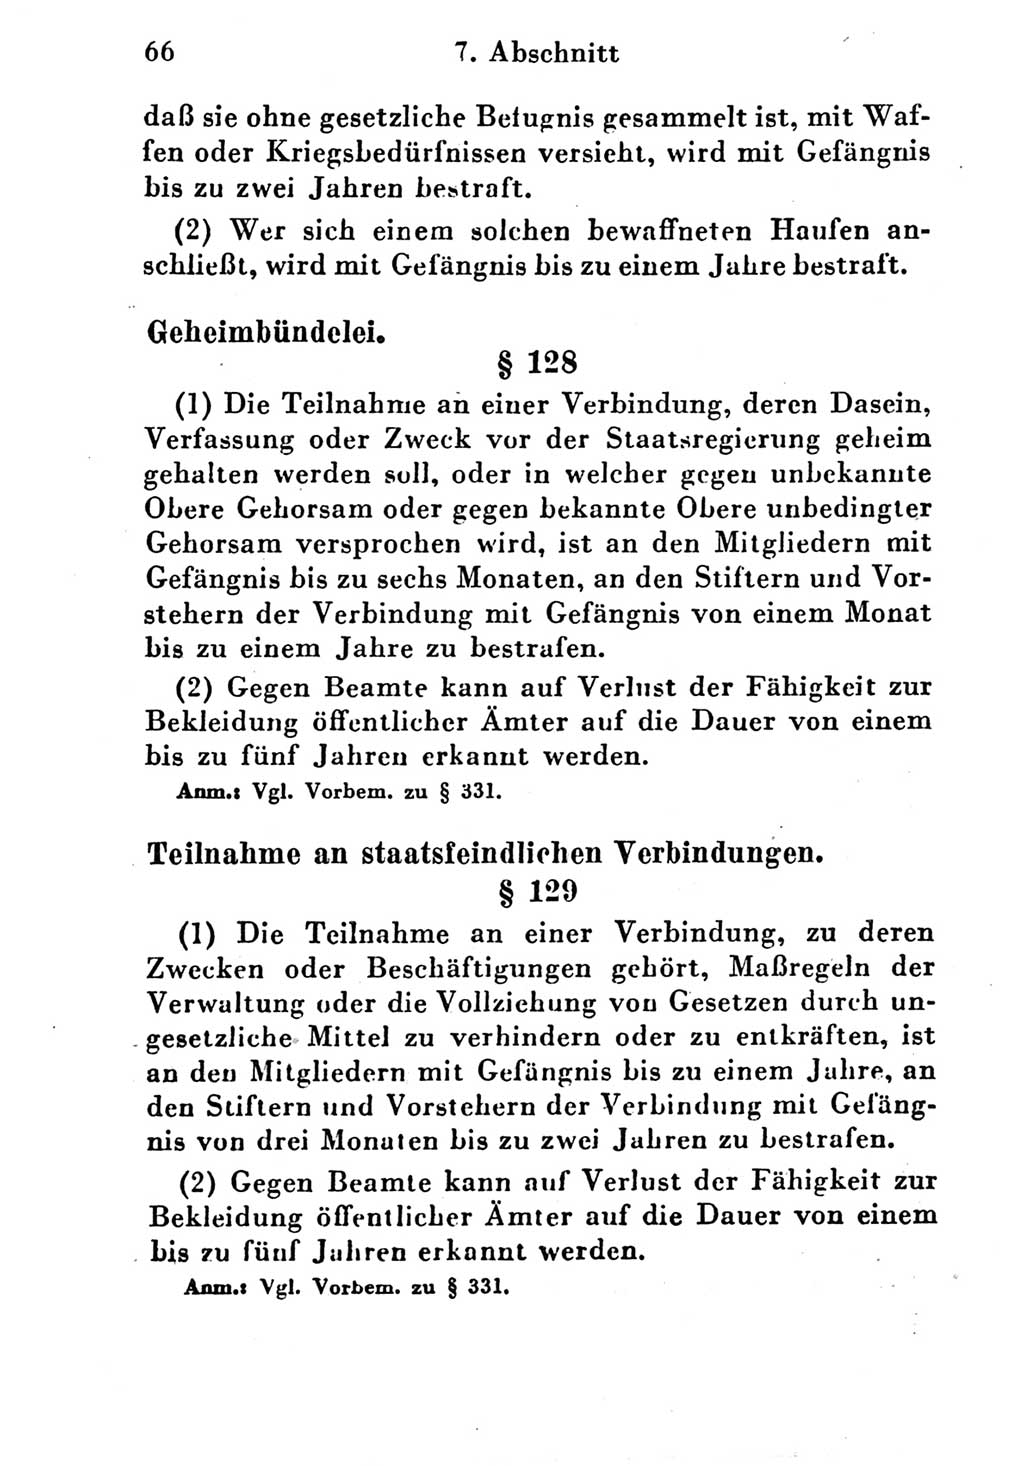 Strafgesetzbuch (StGB) und andere Strafgesetze [Deutsche Demokratische Republik (DDR)] 1951, Seite 66 (StGB Strafges. DDR 1951, S. 66)